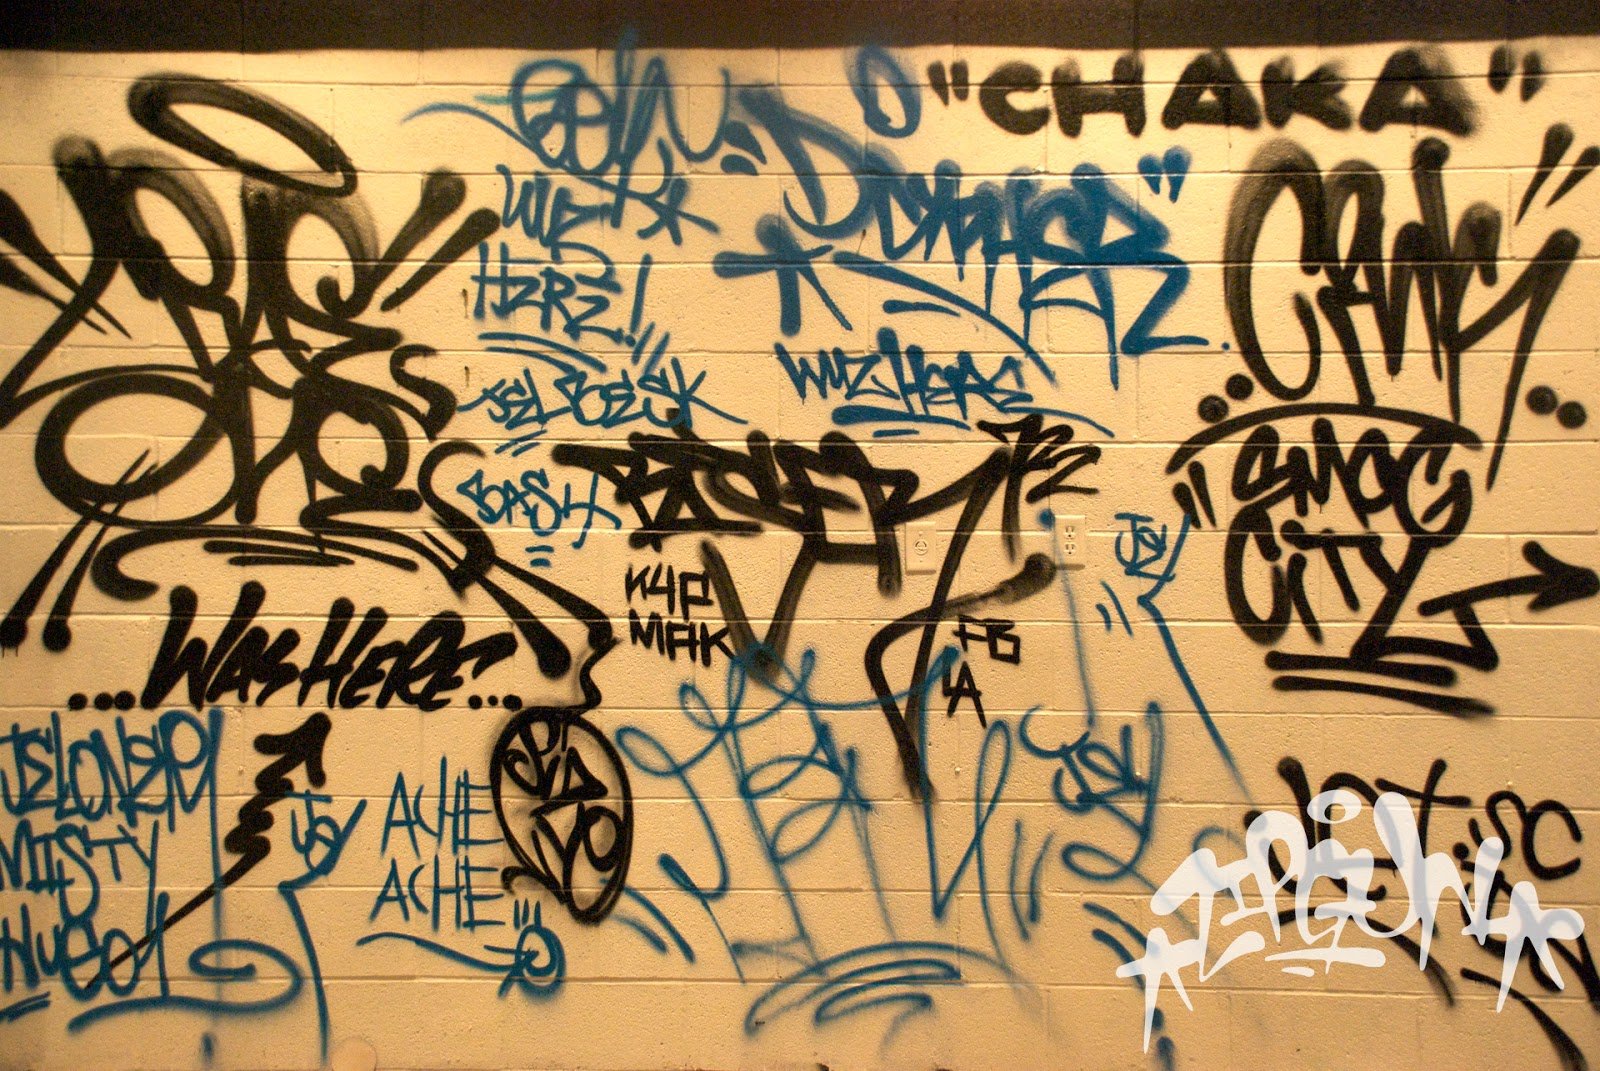 Теги фотографий. Теги граффити. Теги на стенах. Теги граффити для новичков. Теги граффити на стенах.